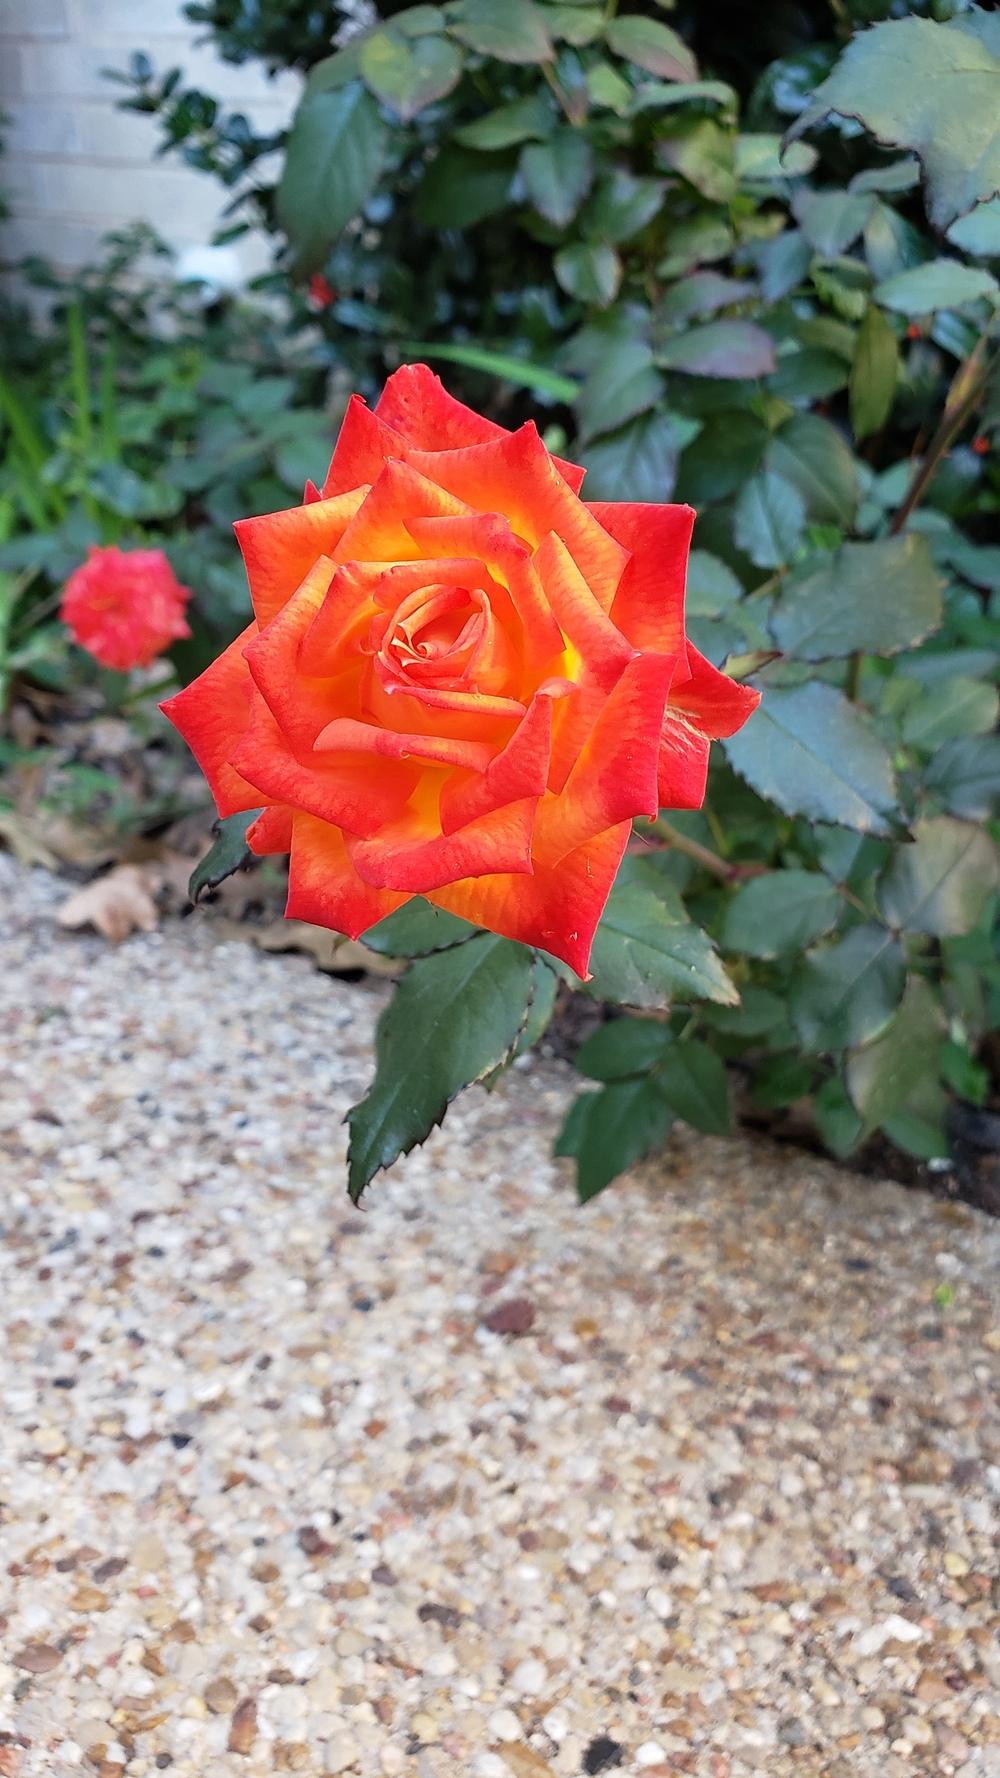 Photo of Rose (Rosa 'Charisma') uploaded by LindsayG